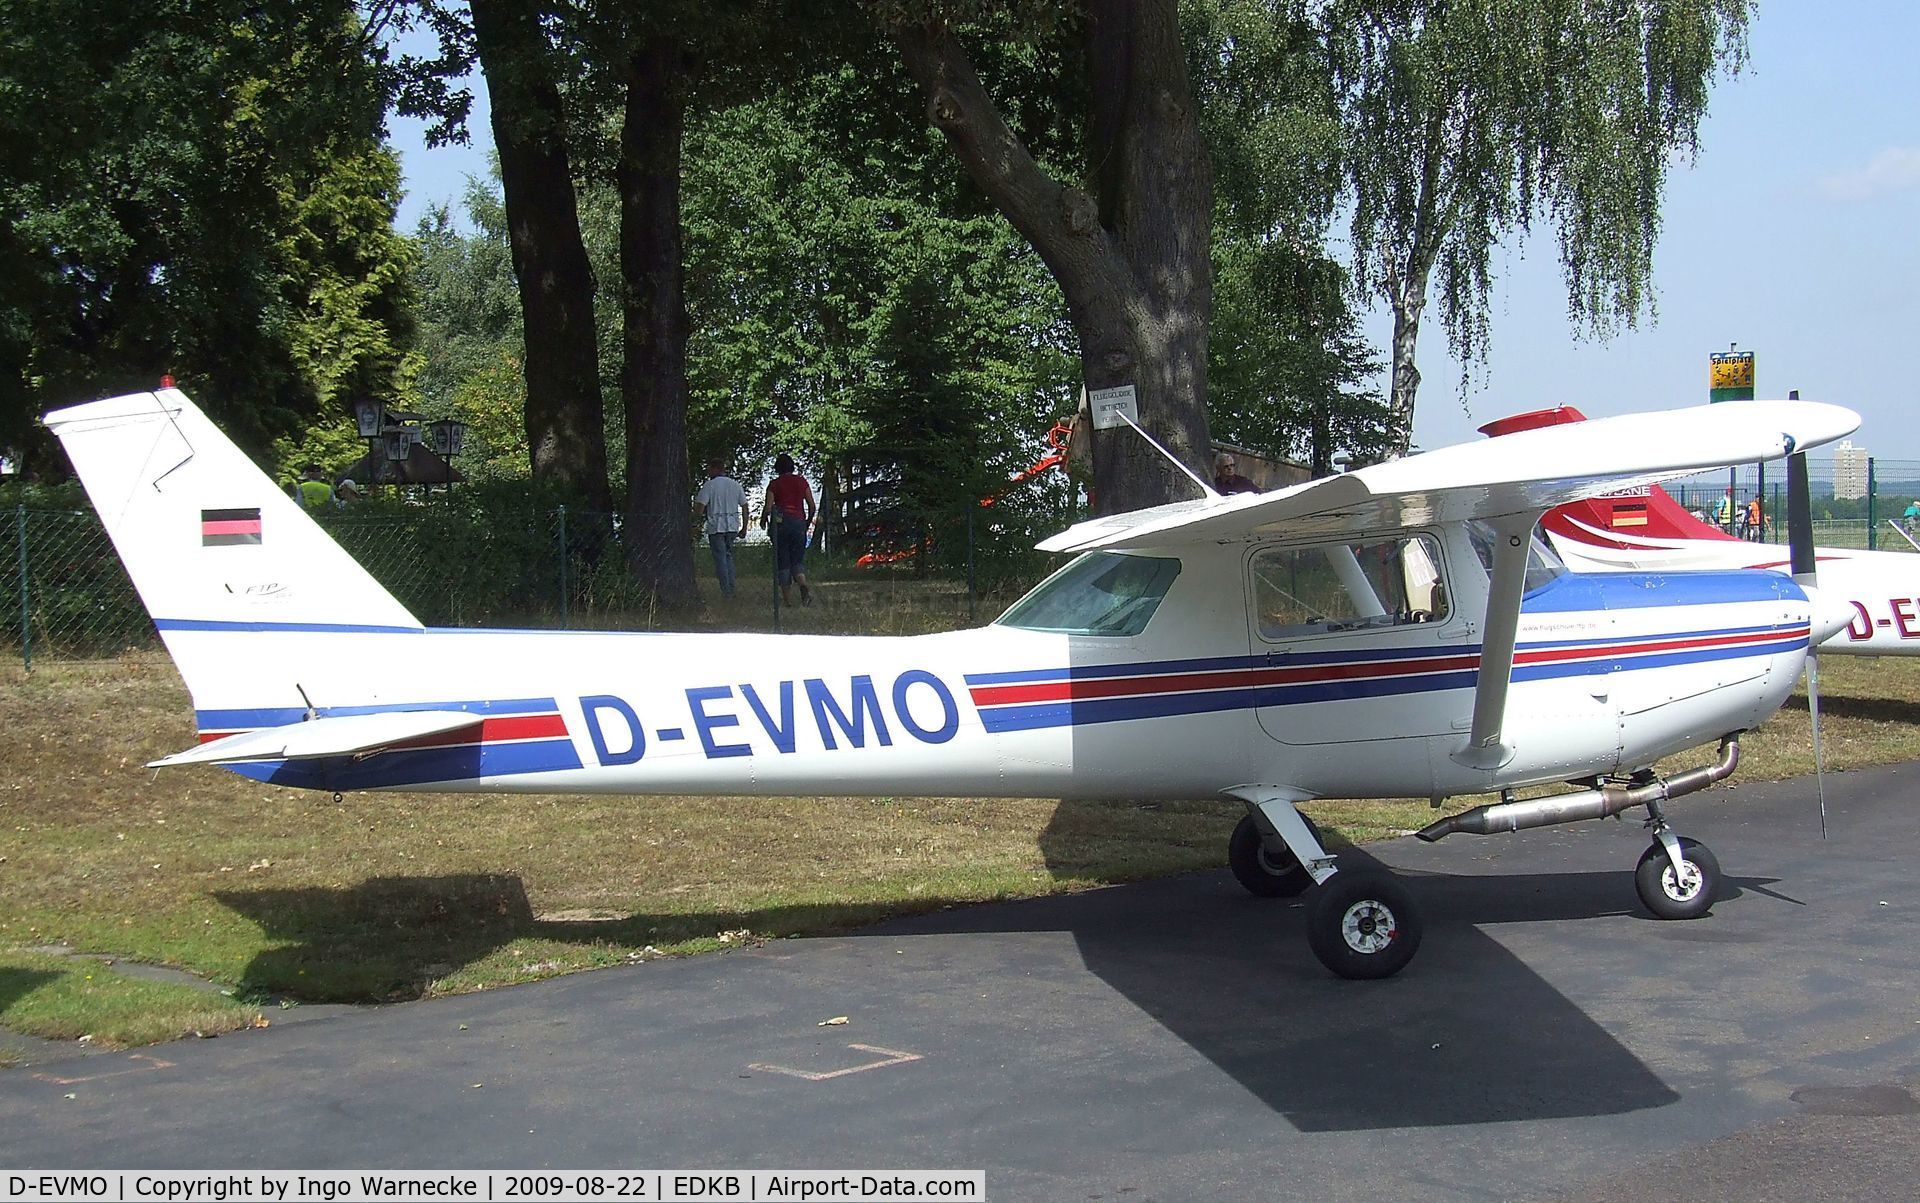 D-EVMO, 2003 Reims F152 C/N 1517, Cessna (Reims) F152 at the Bonn-Hangelar centennial jubilee airshow